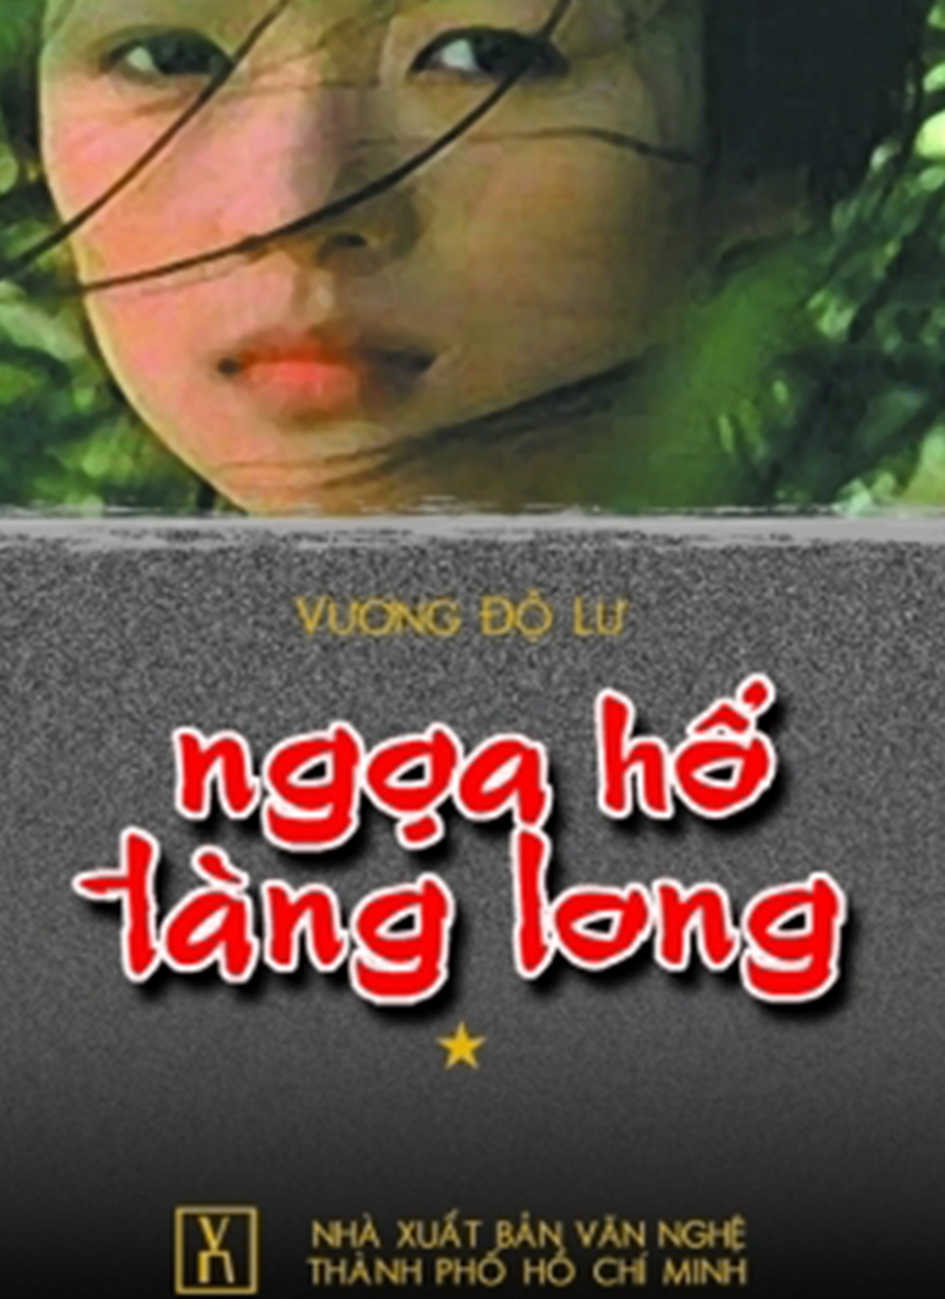 ngoa ho tang long